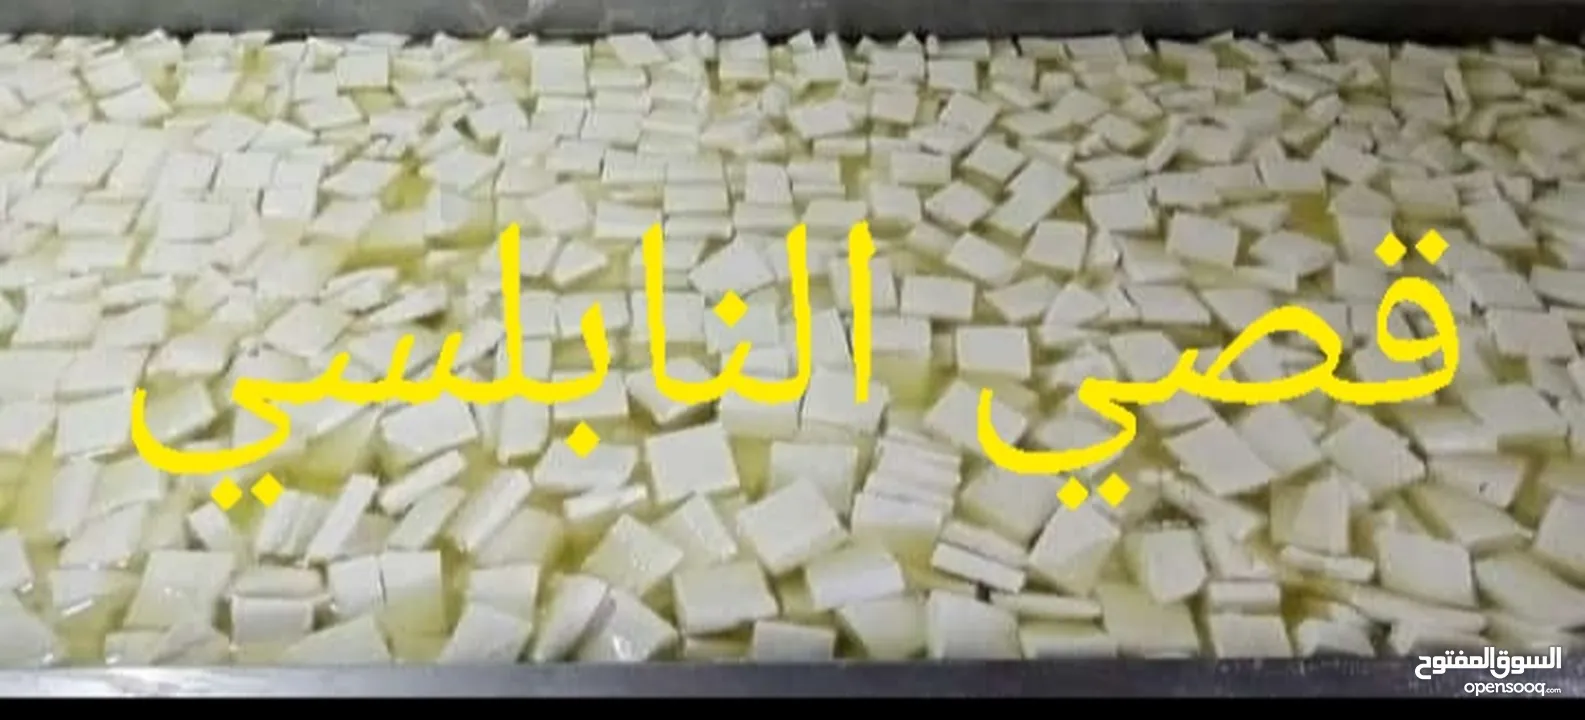 جبنة بيضاء مغلية من حليب النعاج الطازج مكفولة من اول حبة لآخر حبه وزن الجبنة 4 كيلو صافي ب 15 دينار